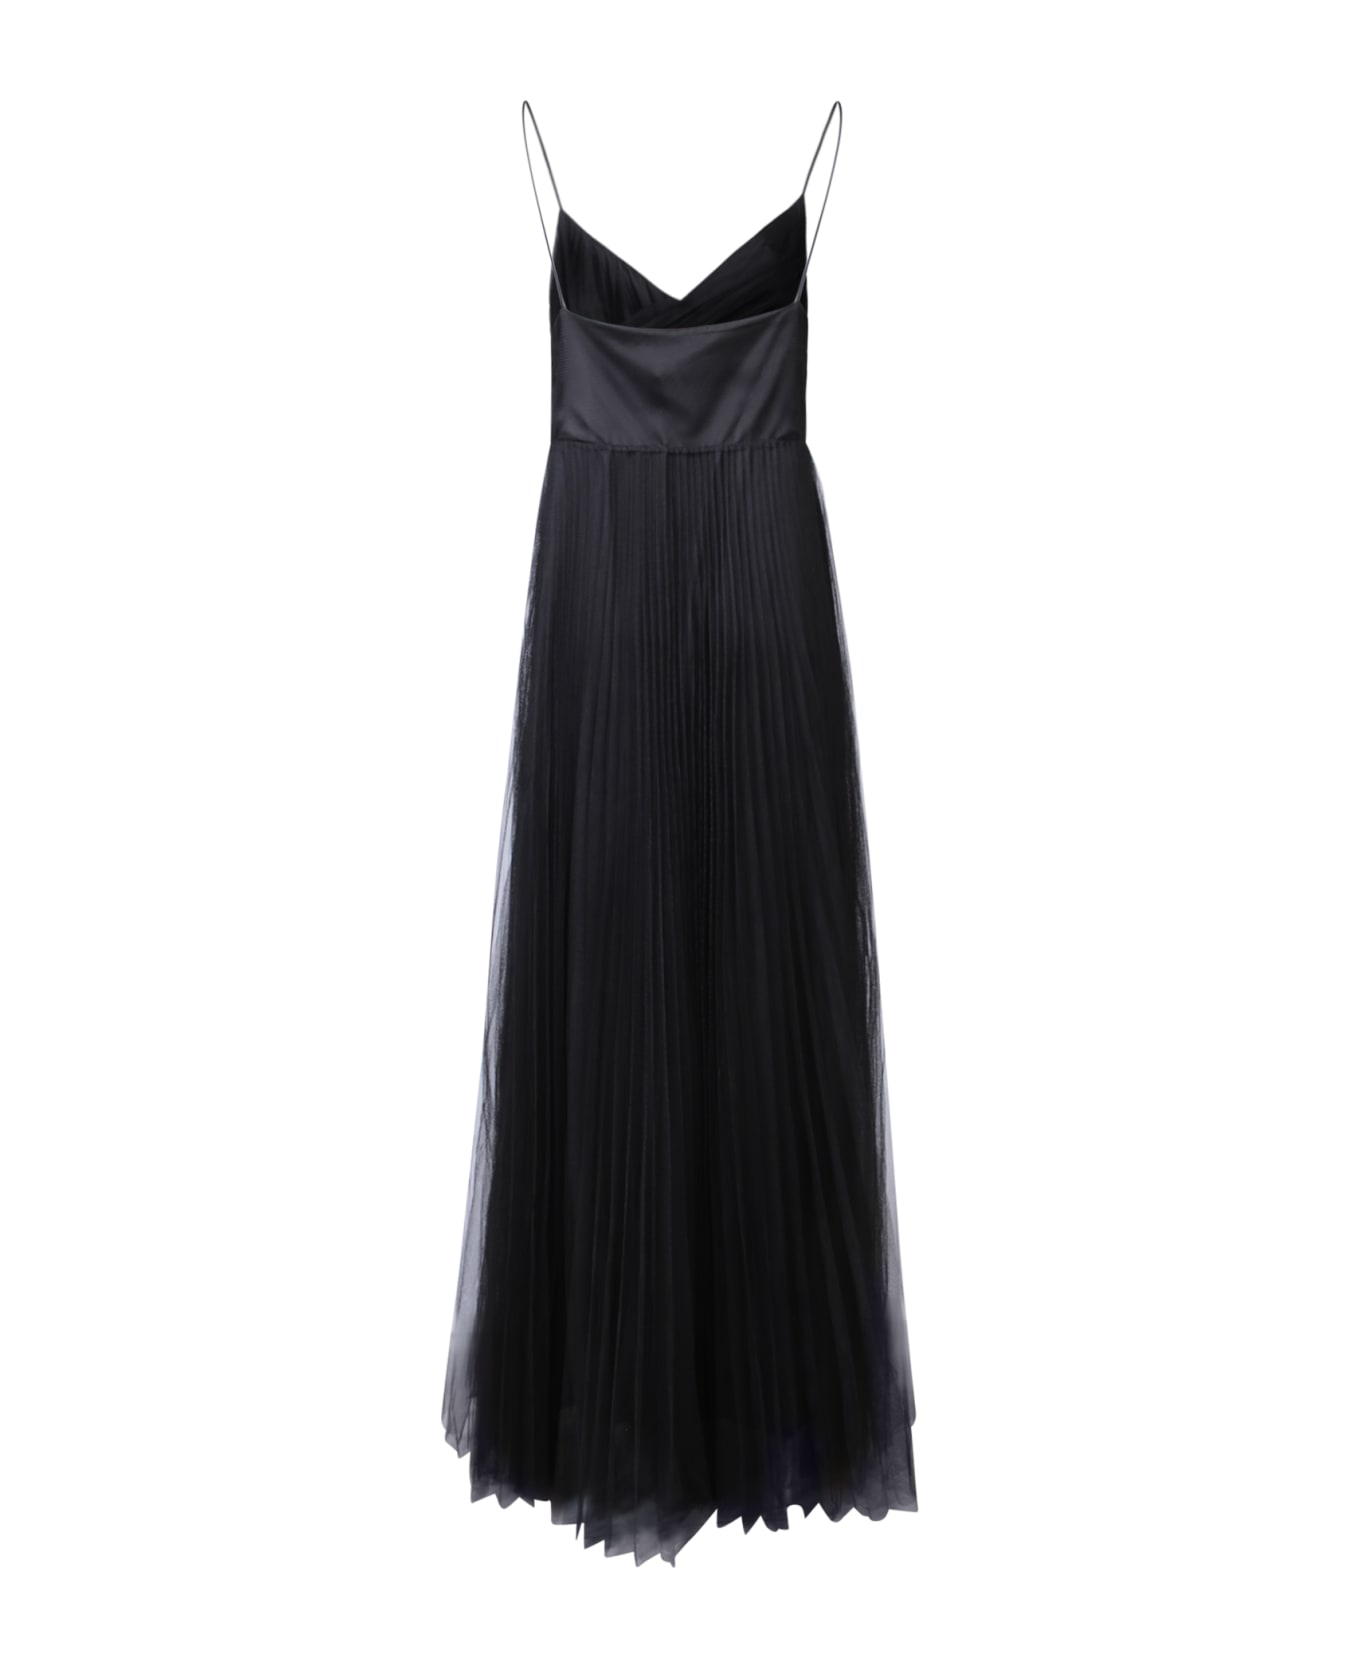 Fabiana Filippi Pleated Tulle Long Black Dress By Fabiana Filippi - Black